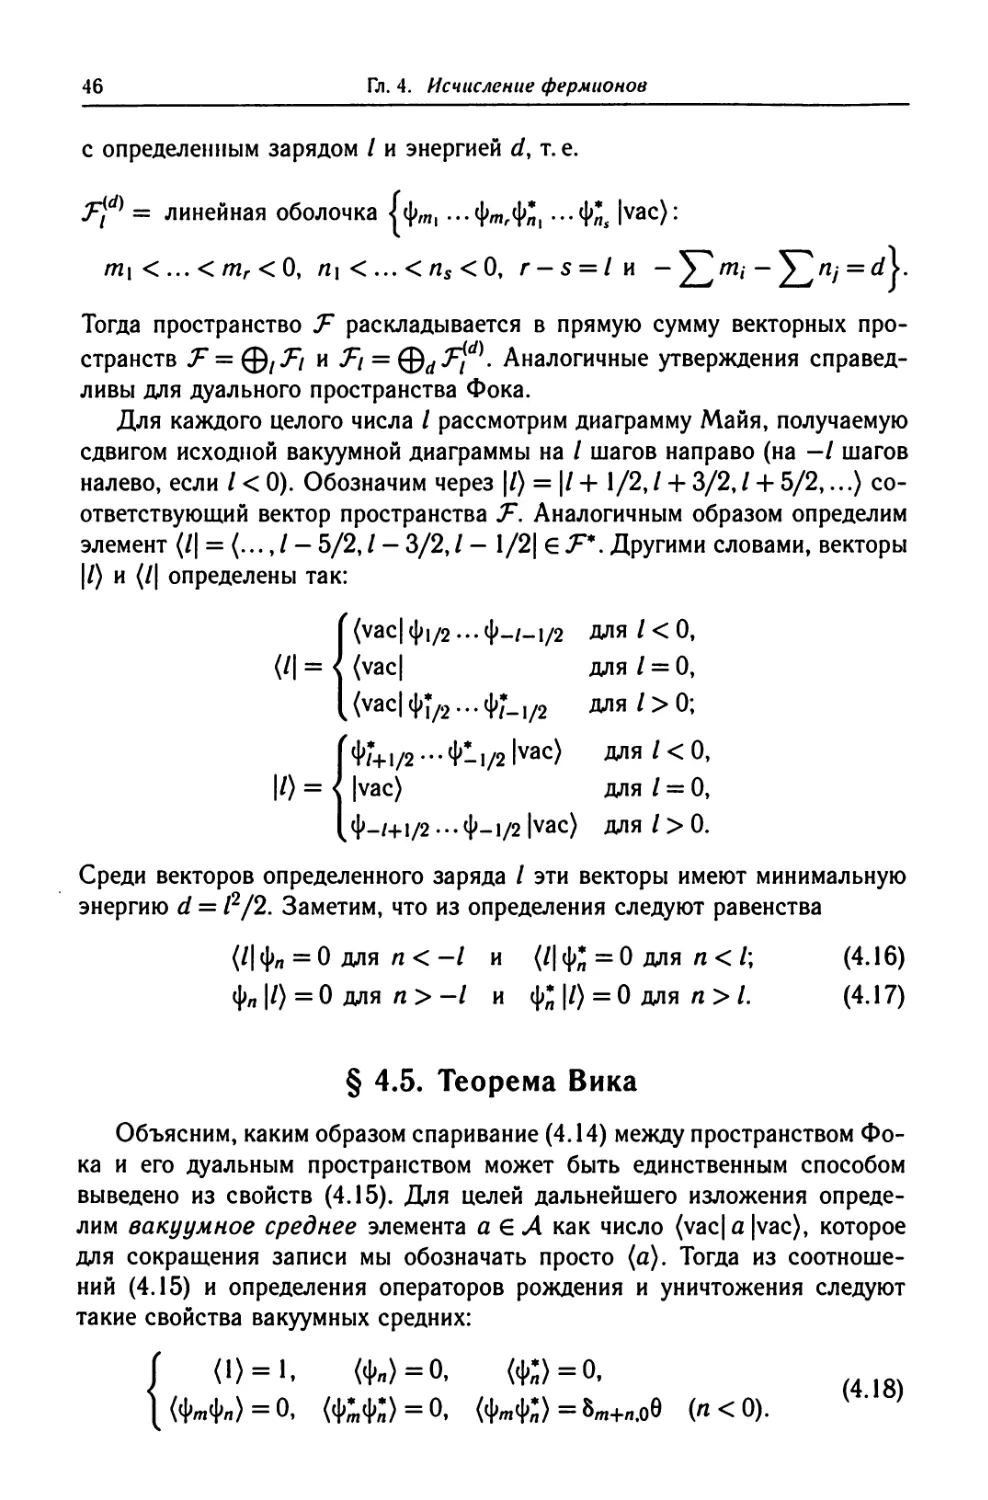 § 4.5. Теорема Вика